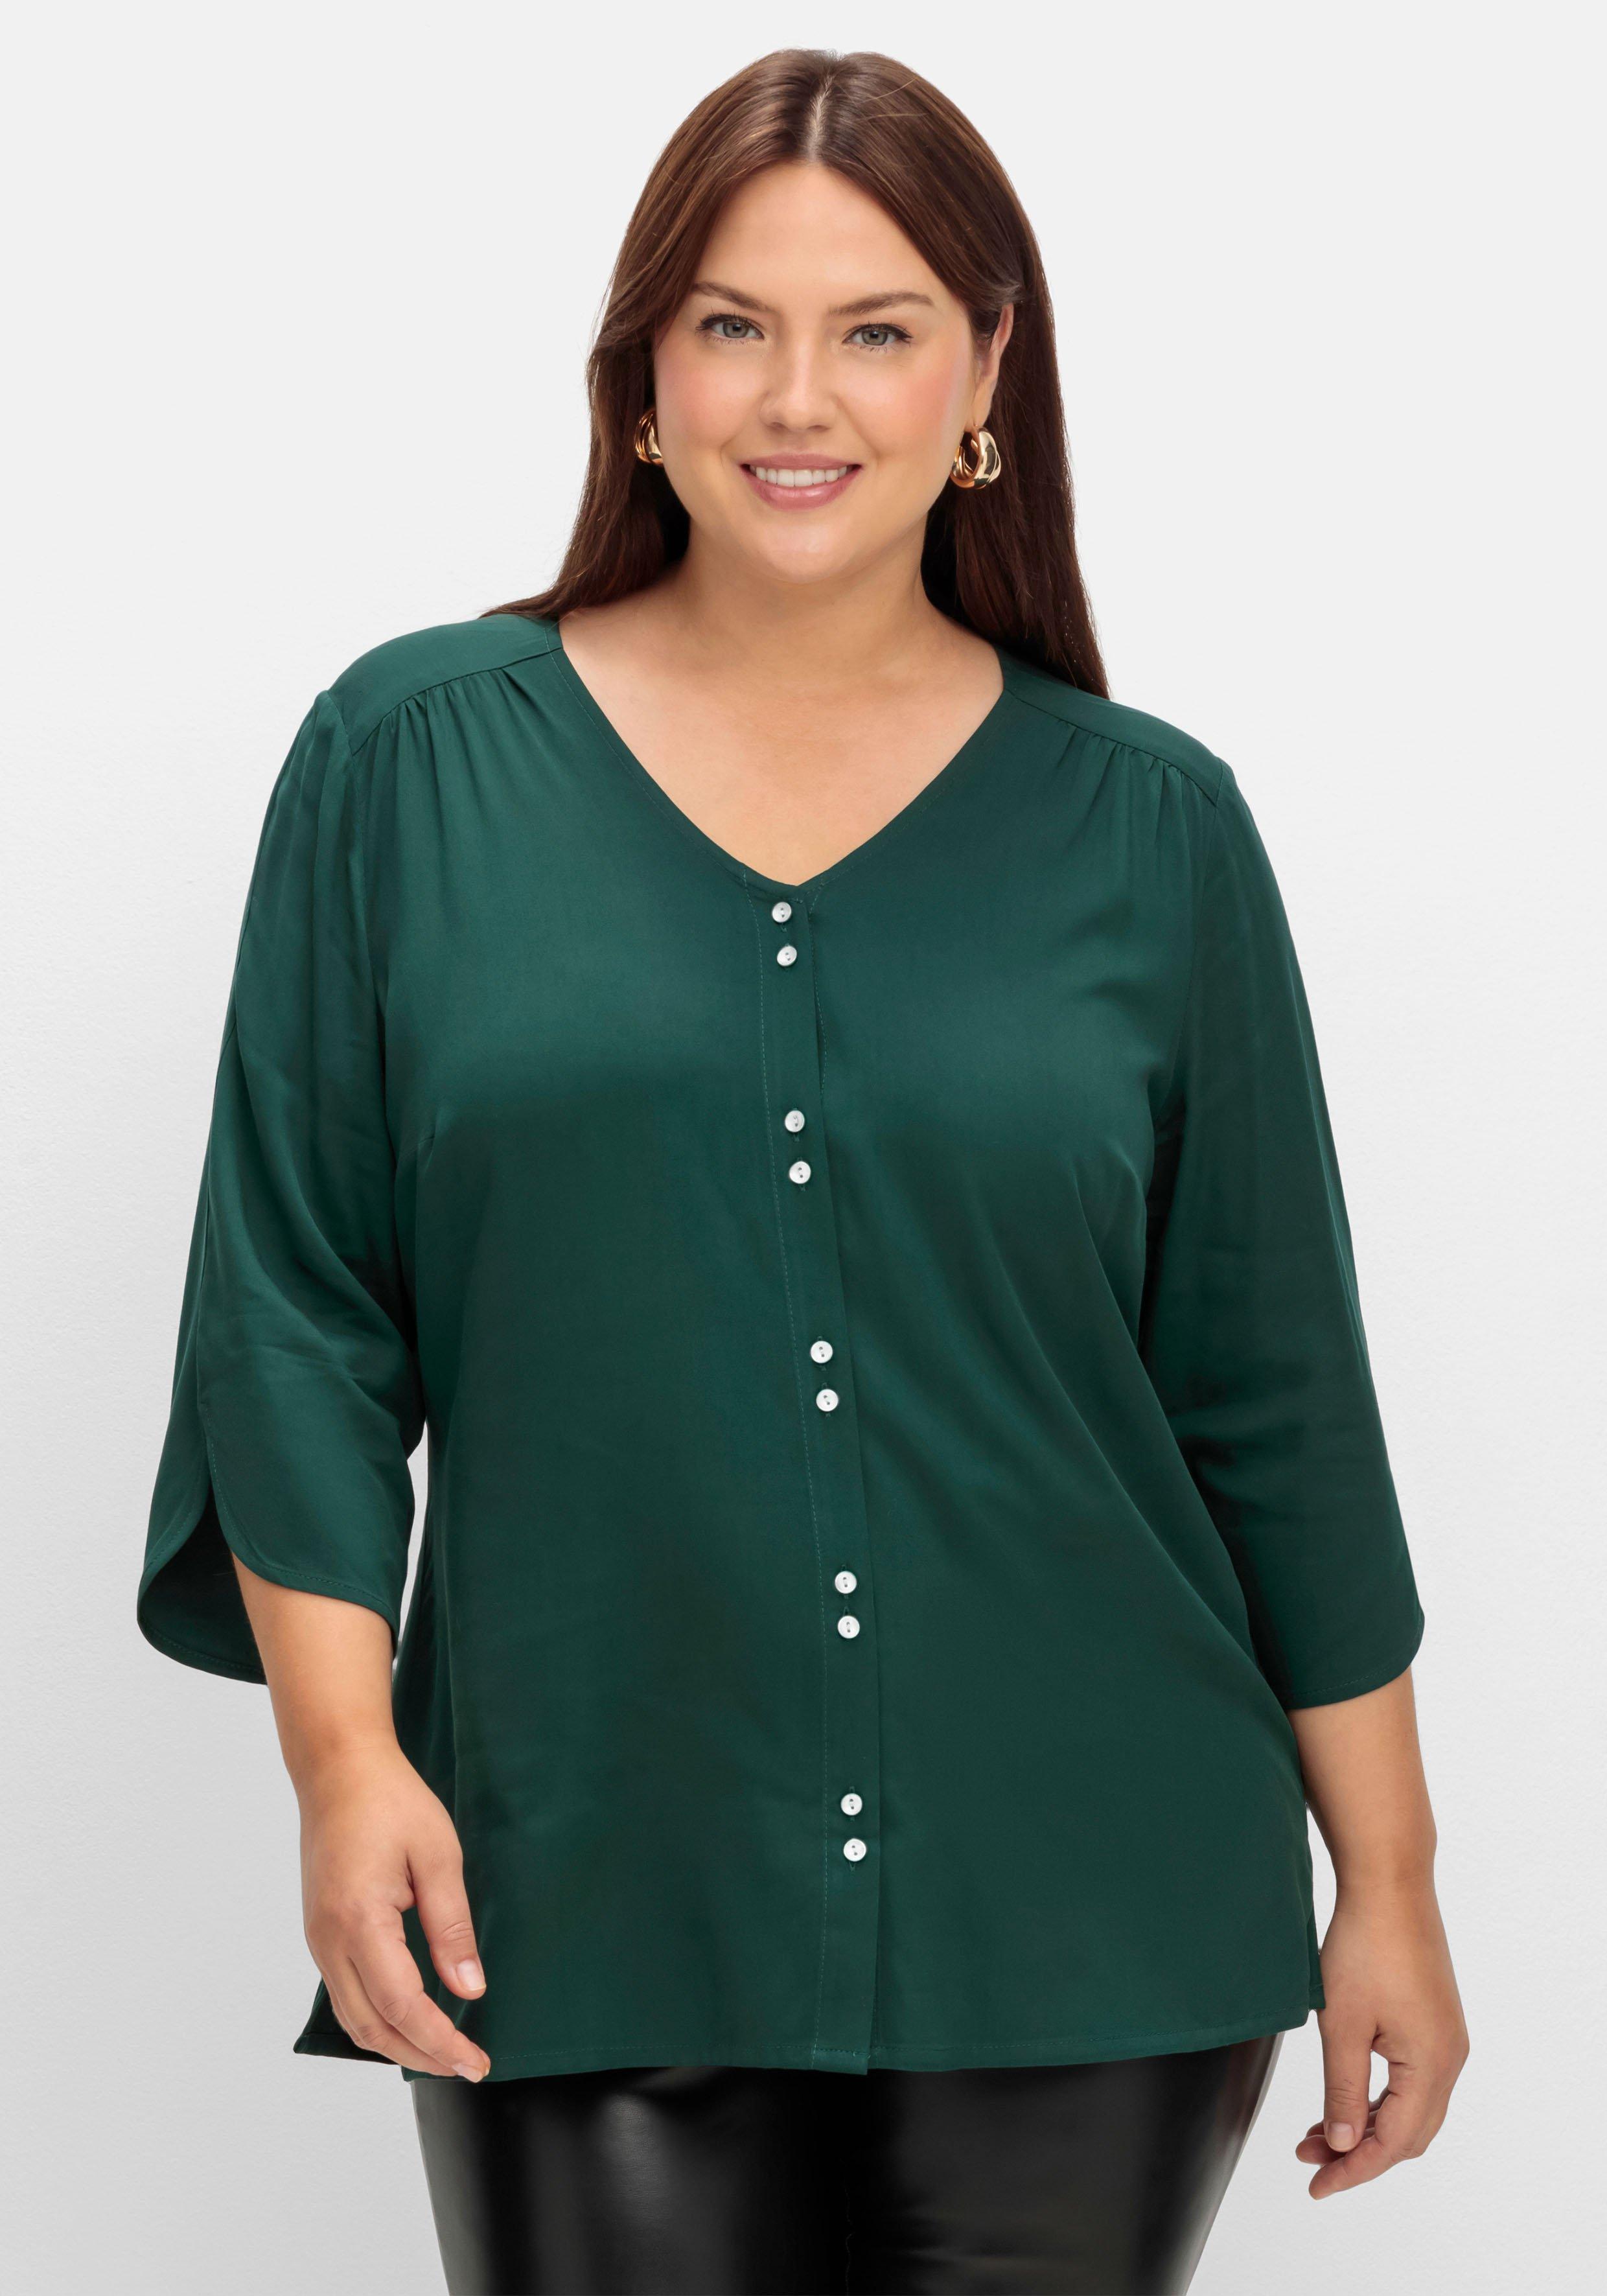 Blusen & Tuniken grün Plus Size Mode | Größen große sheego ♥